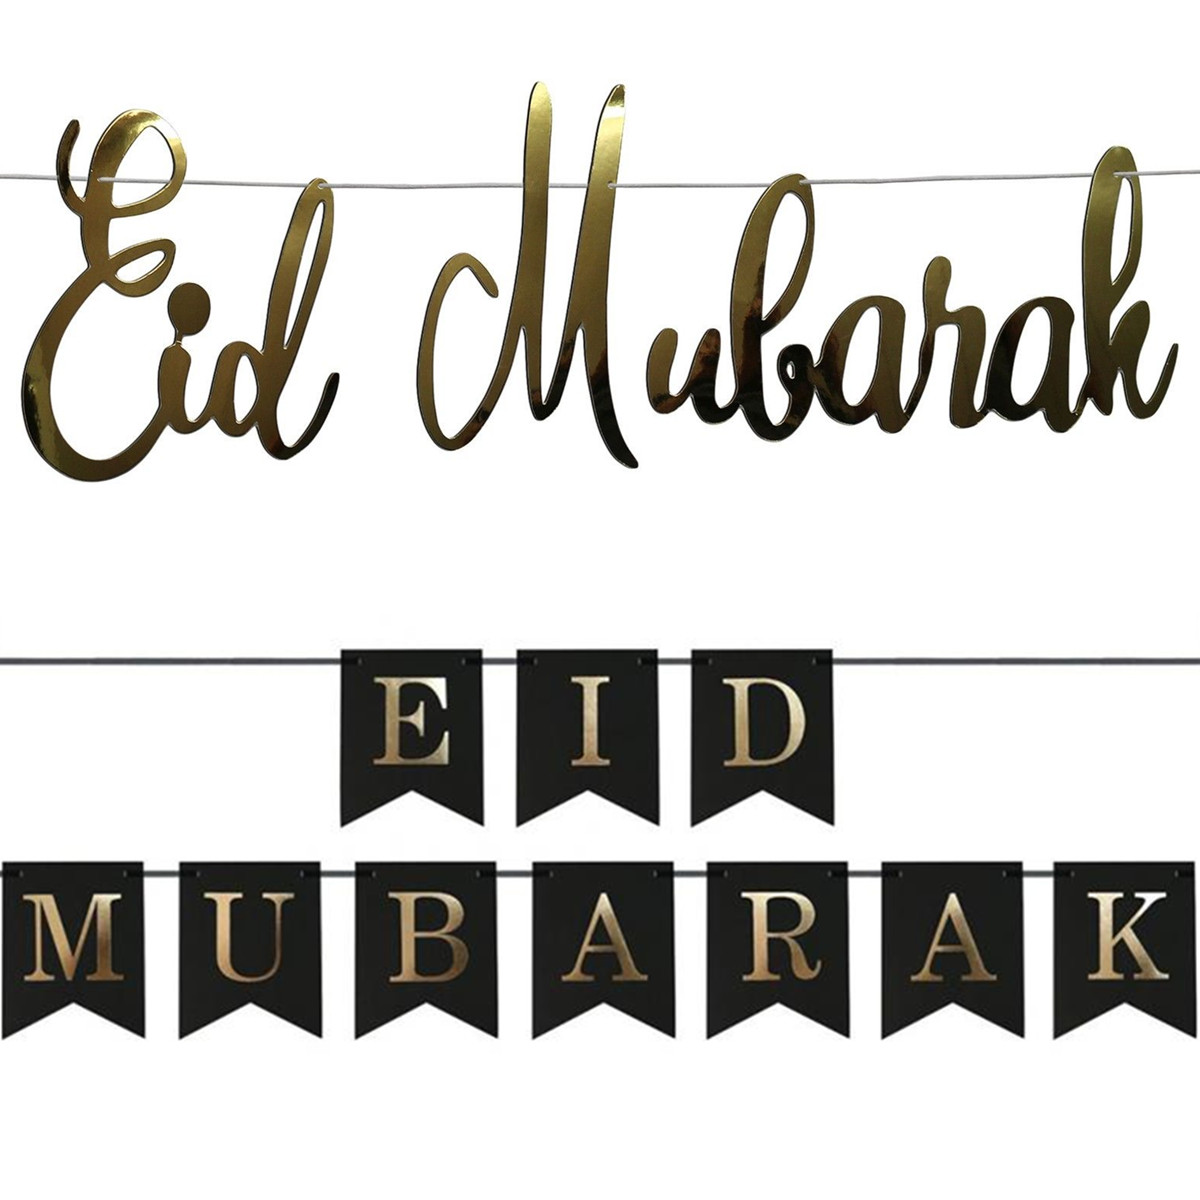 Eid-Mubarak-Ramadan-Kareem-Islam-Pennant-Bunting-Home-Party-Banner-Decorations-1632760-4